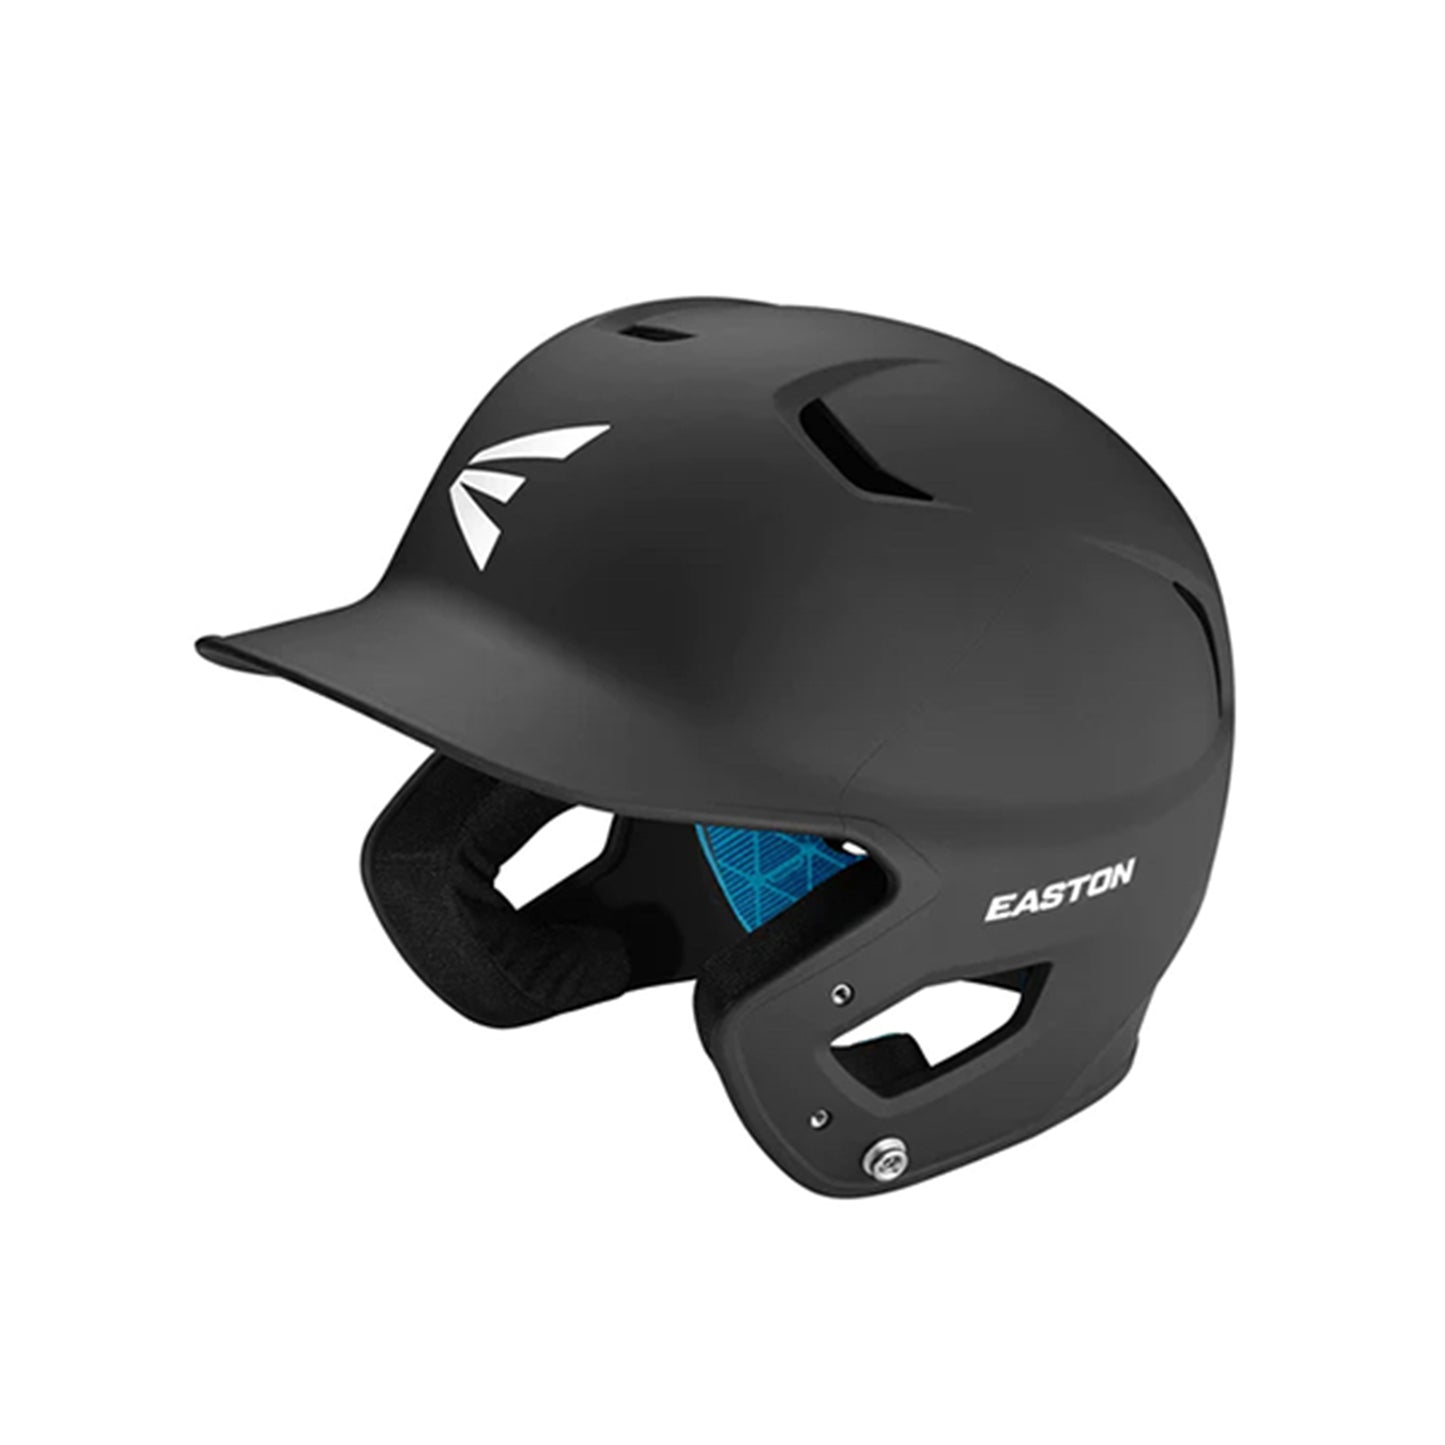 Easton Z5 2.0 Senior Grip Helmet